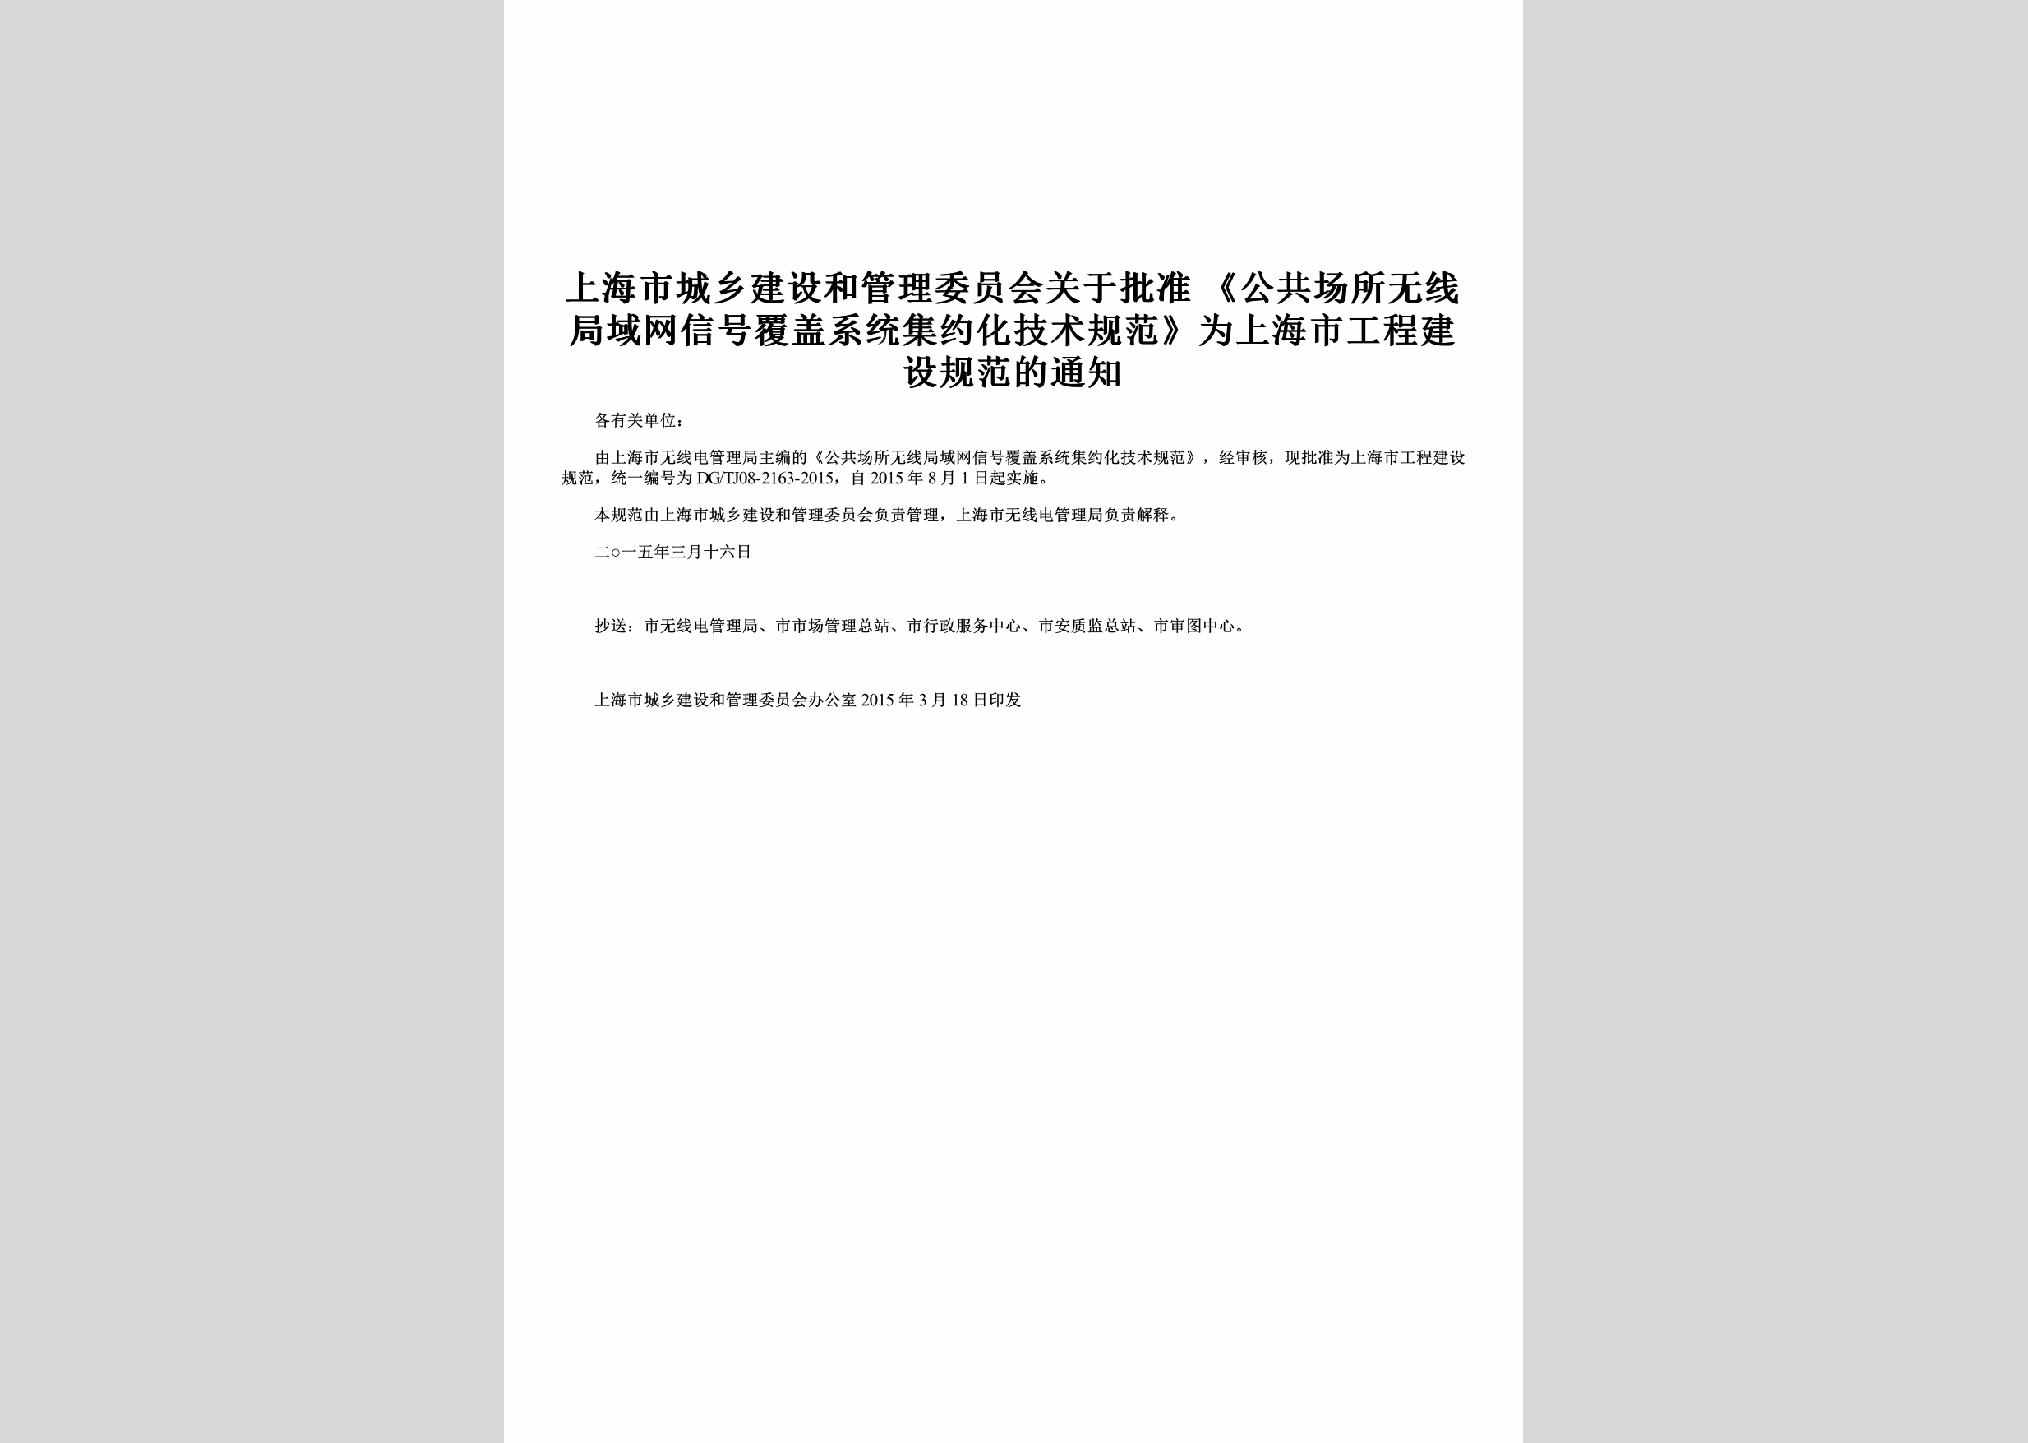 SH-WXXHFGJS-2015：关于批准《公共场所无线局域网信号覆盖系统集约化技术规范》为上海市工程建设规范的通知